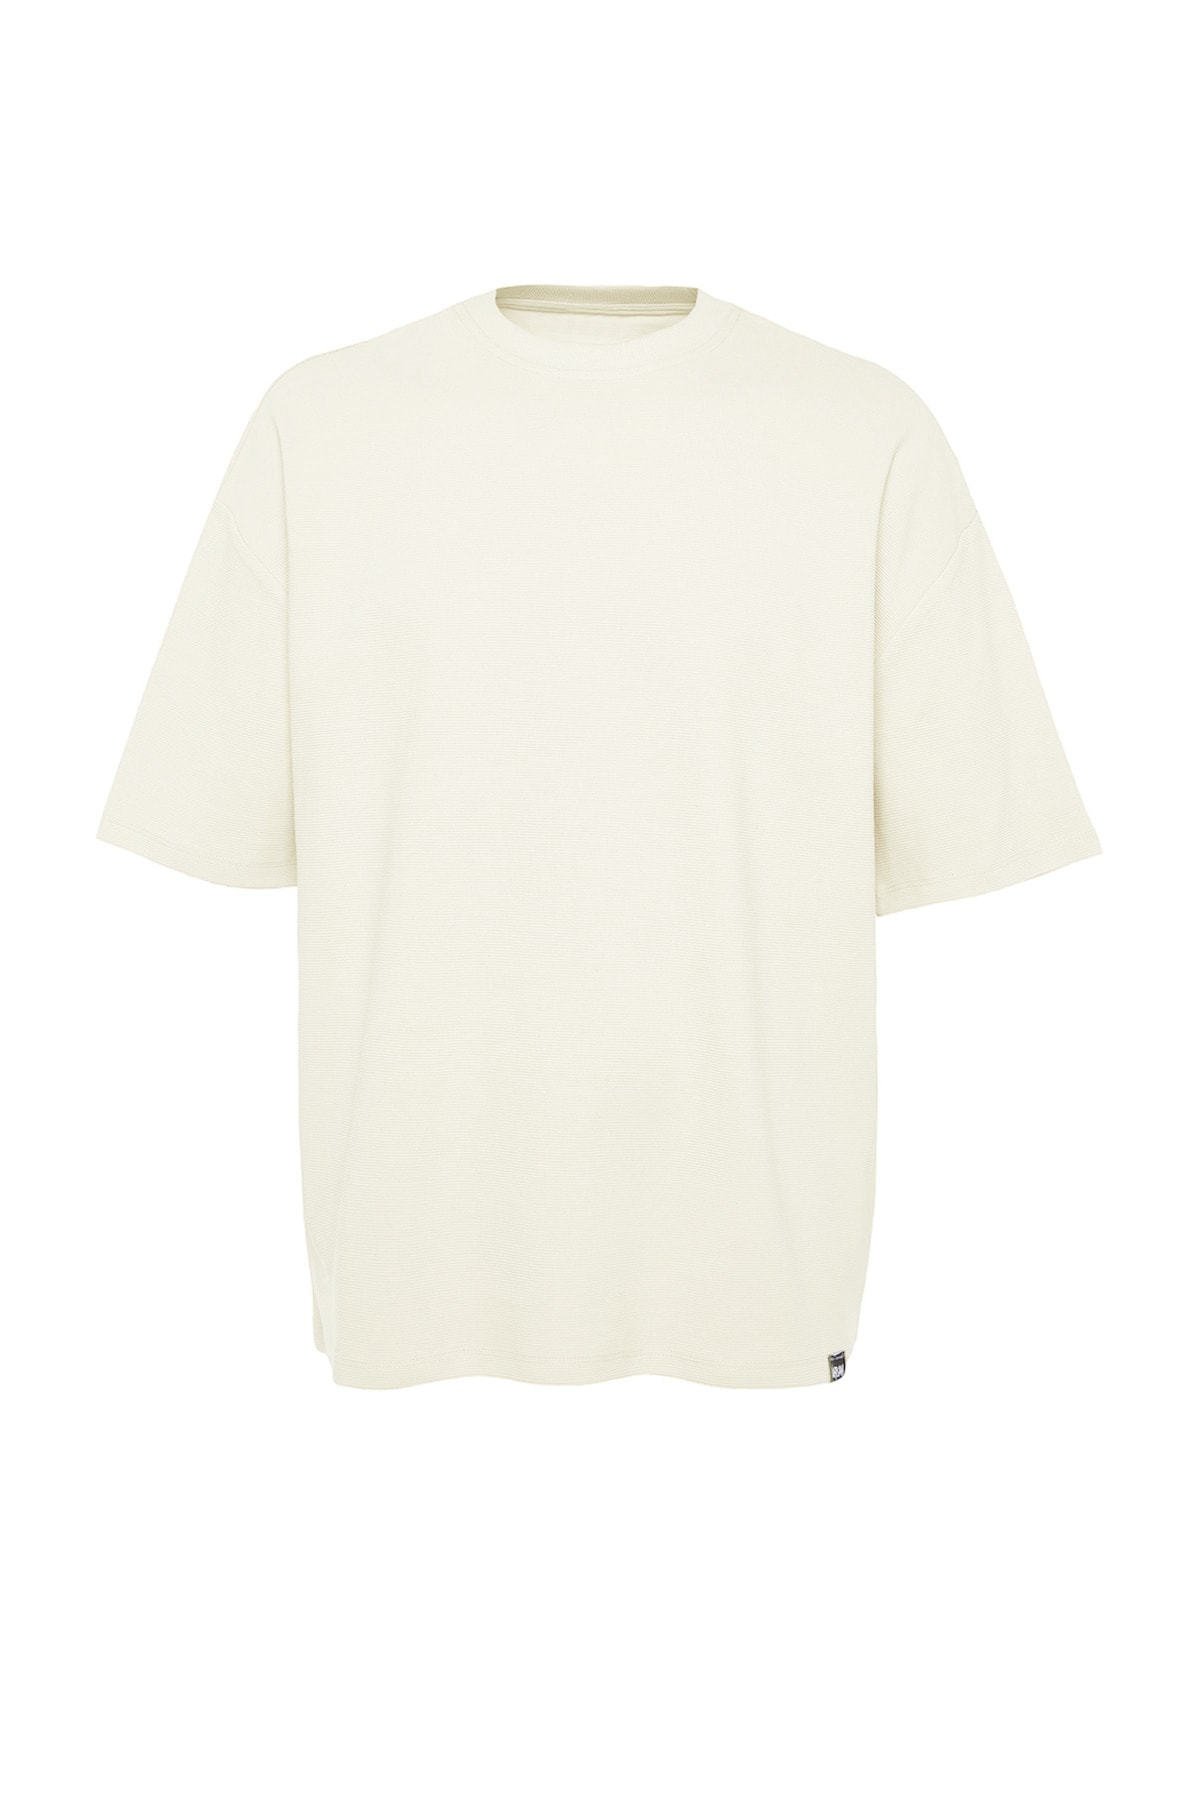 Trendyol Collection Ecrufarbenes - Übergröße/Weitschnitt Auflage 100 Trendyol Premium-Baumwolle Herren-T-Shirt limitierter in Struktur aus mit in 